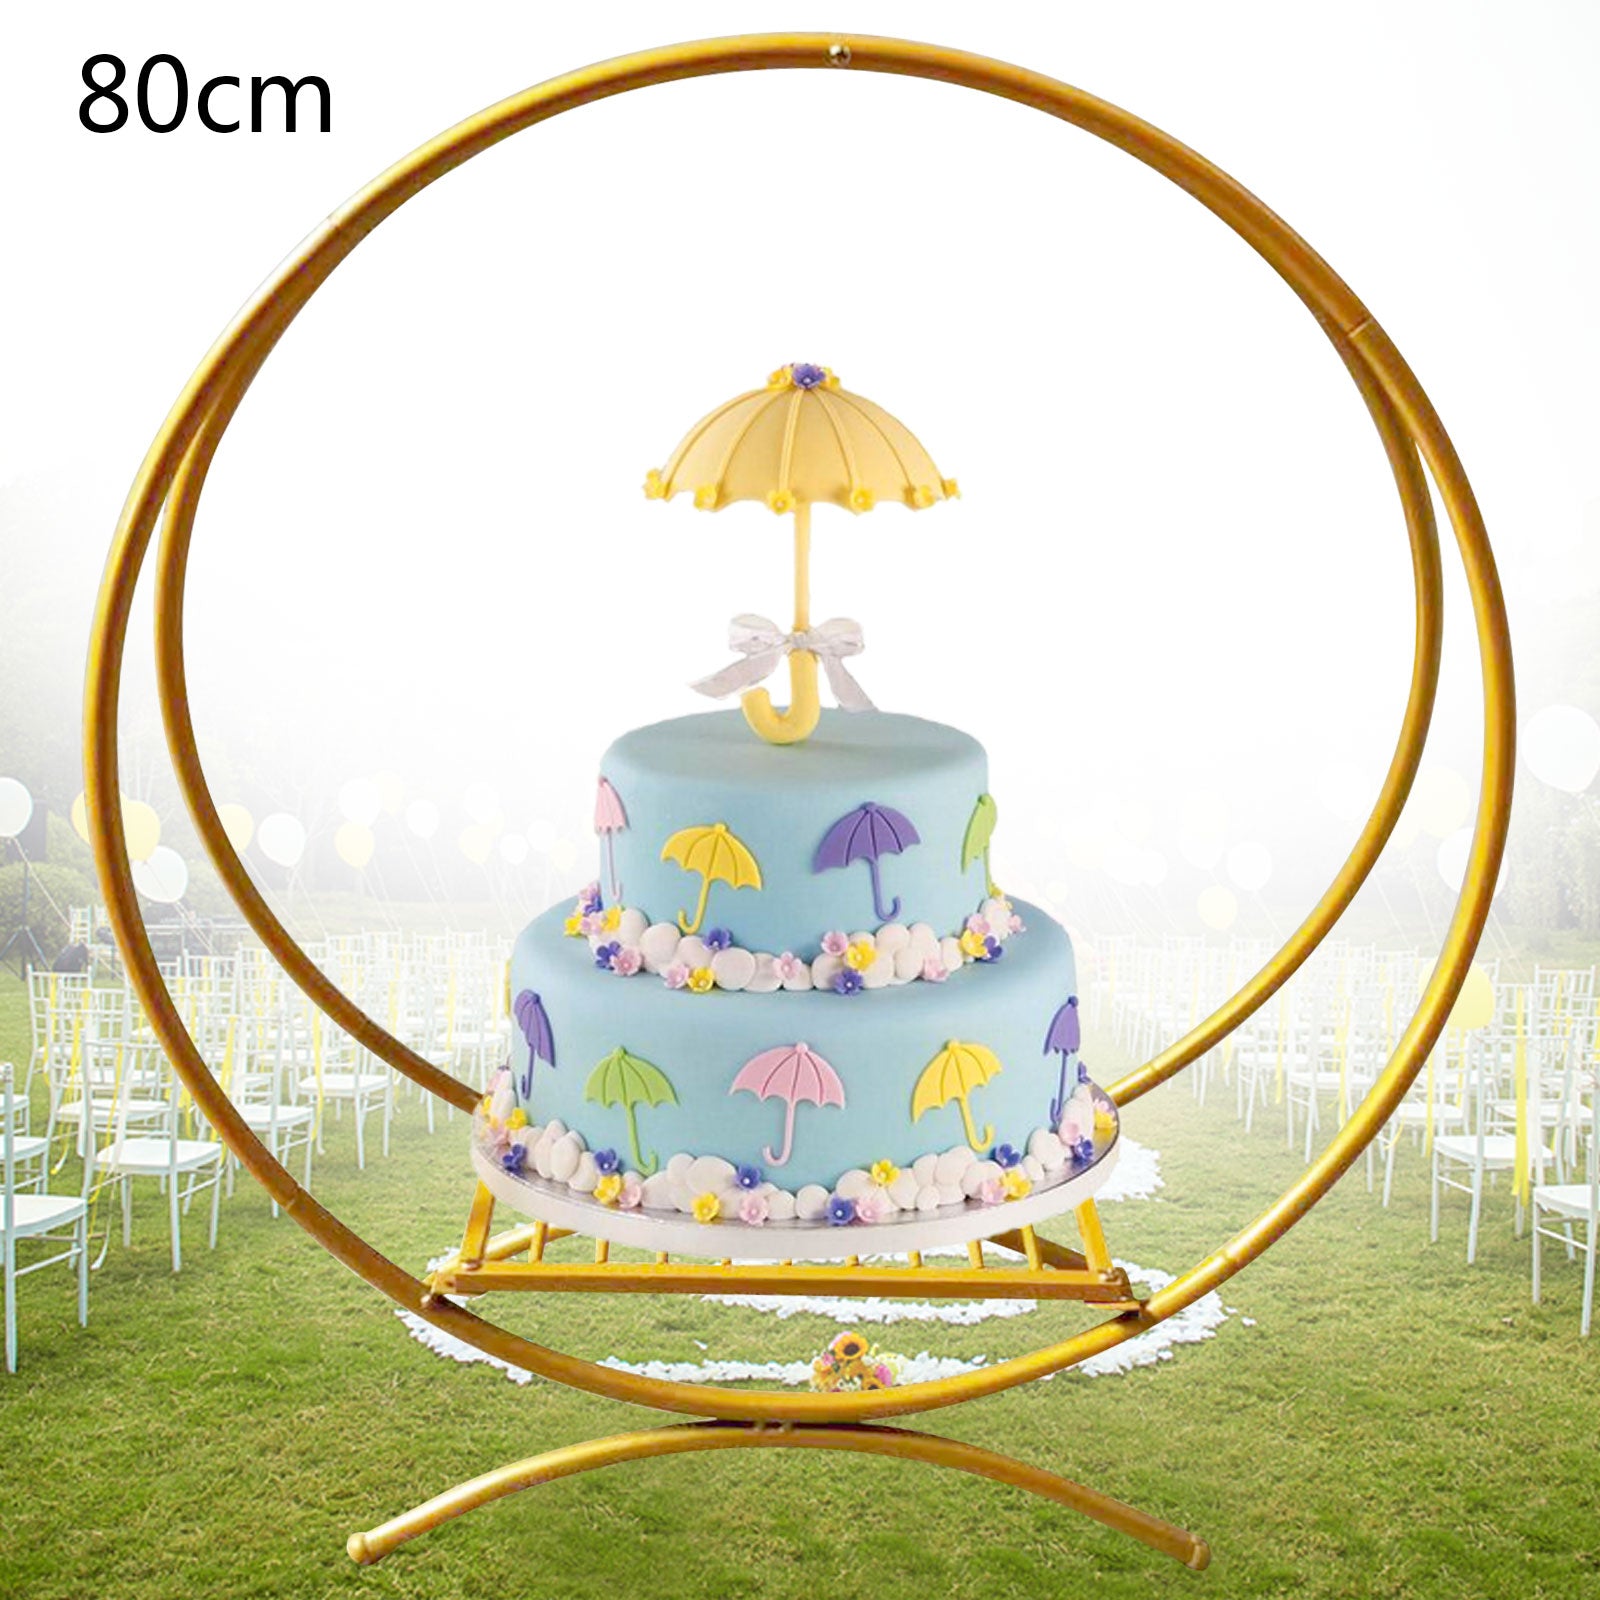 Oro 80cm torta matrimonio stand fiore stand fiore hanger decorazione di nozze, adatto per matrimonio compleanno baby shower